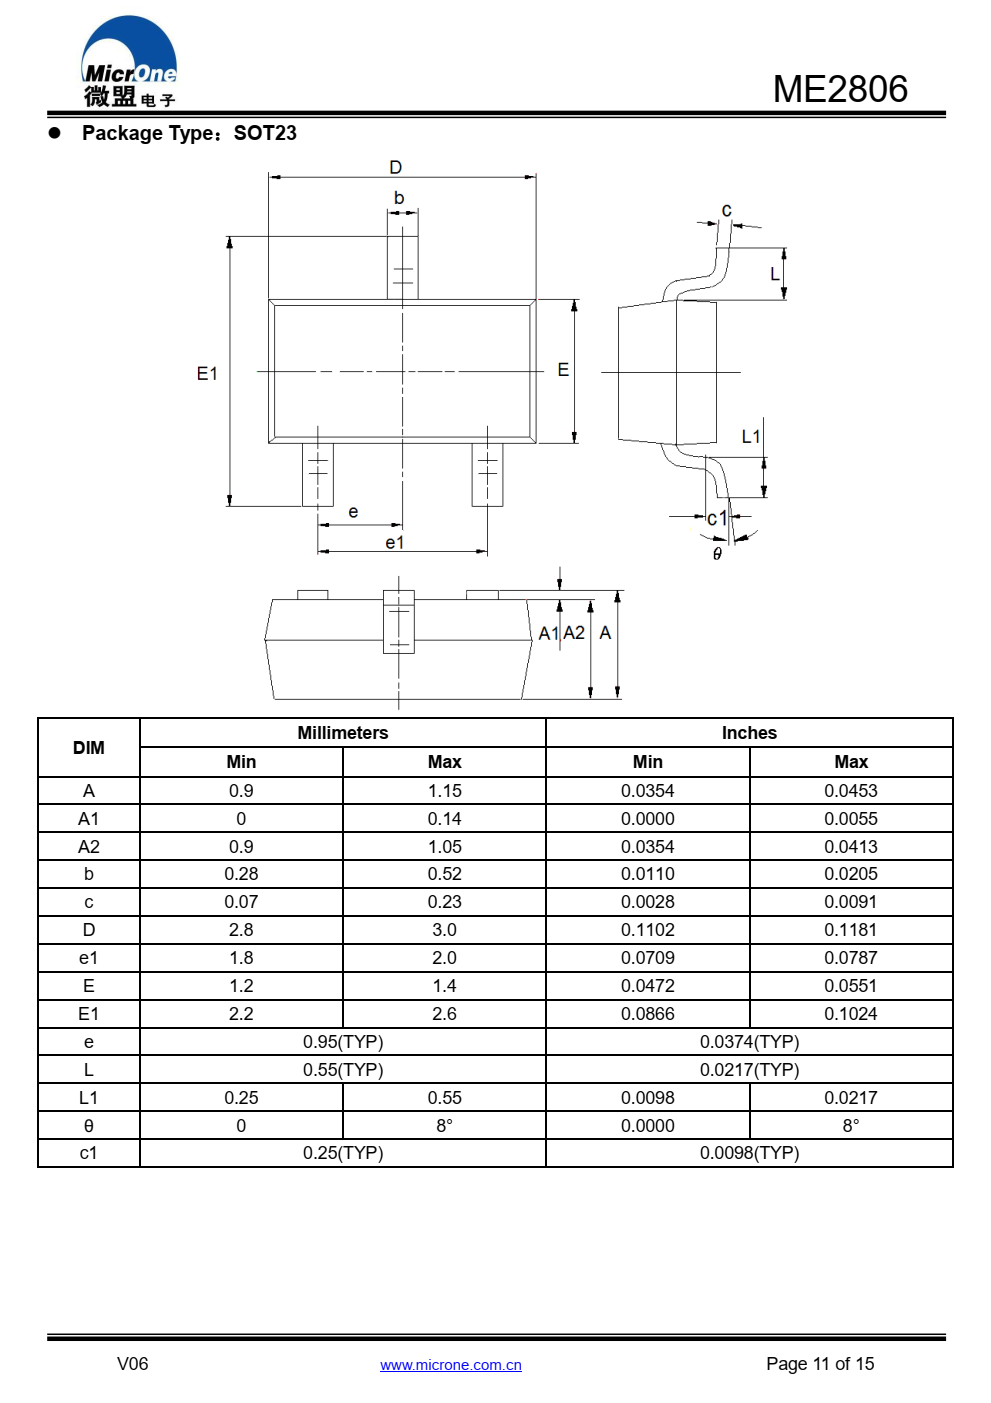 ME2806系列是一种高精度电压源系列  内置固定延迟时间发生器的探测器  使用NMOS过程开发的时间